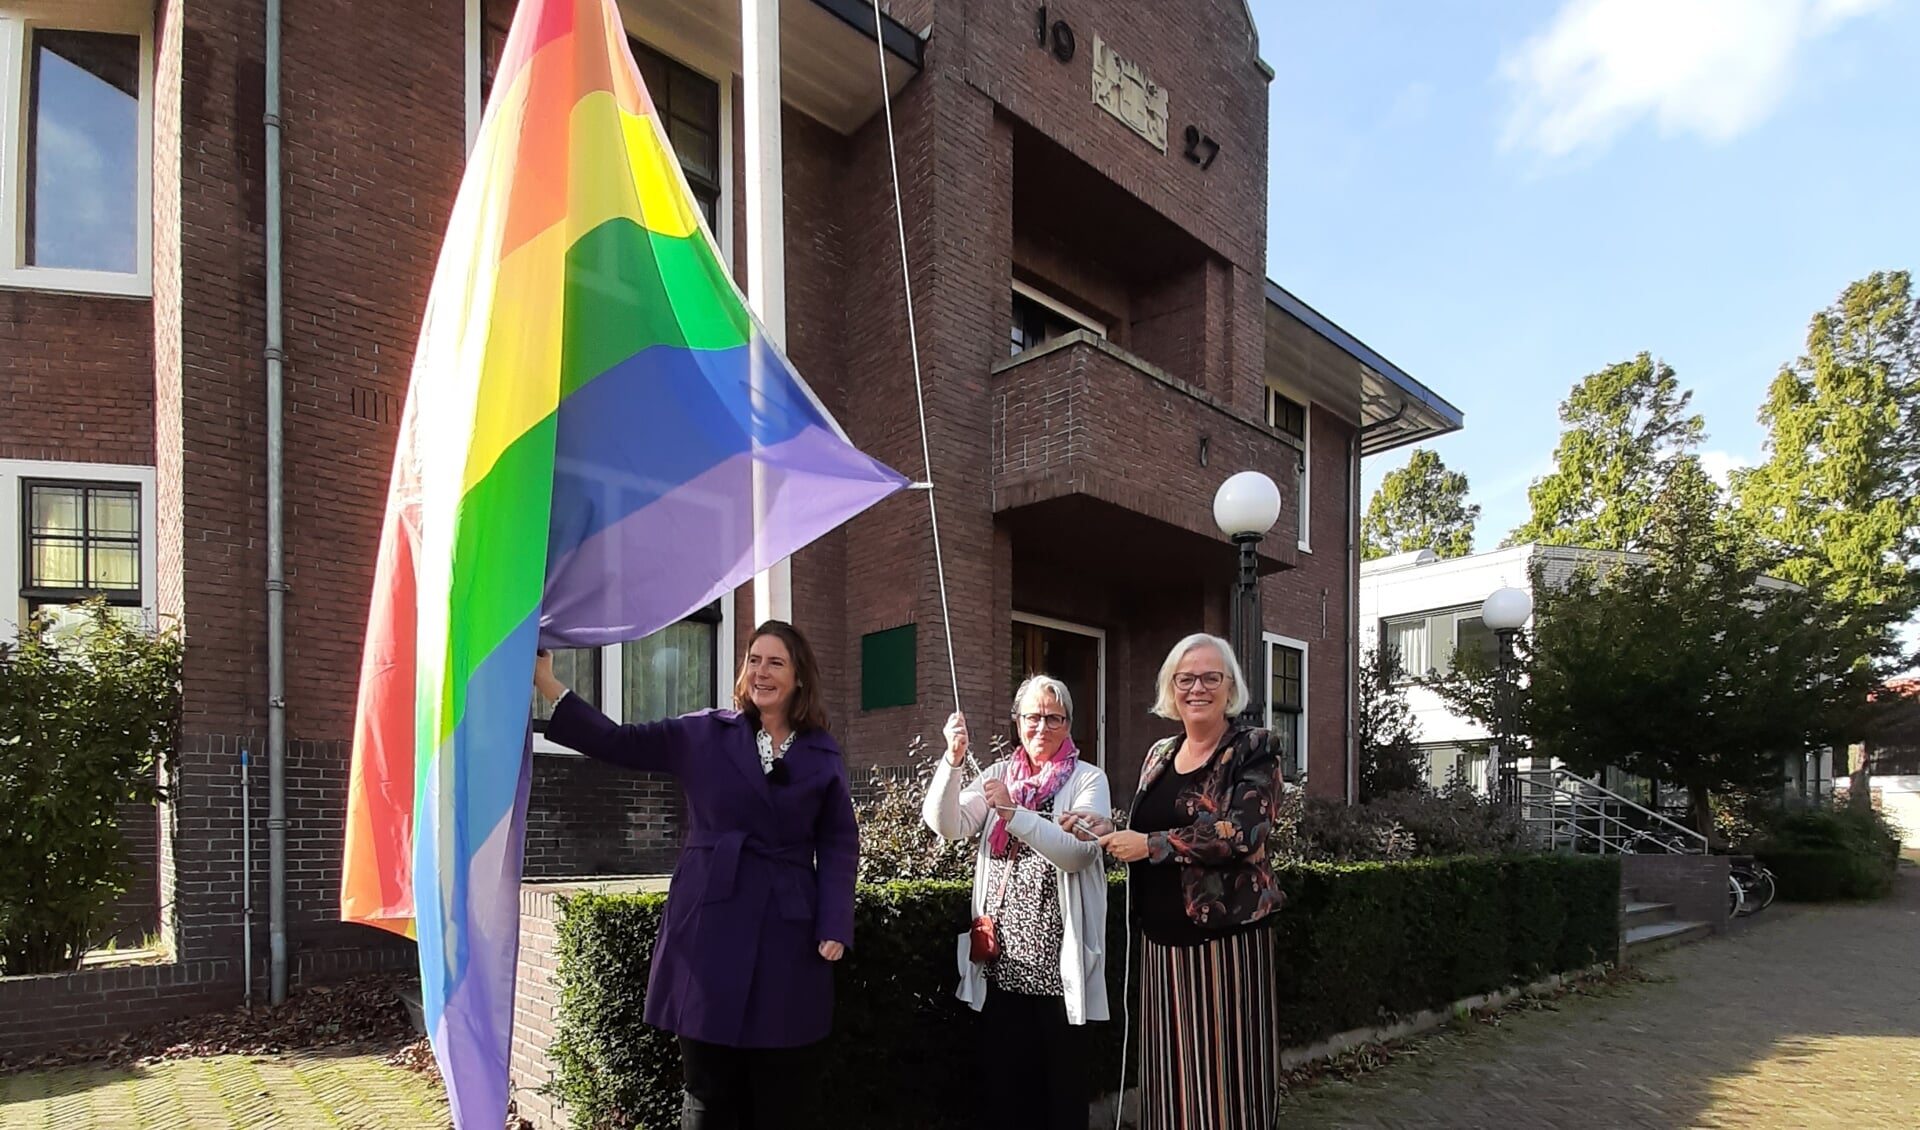 Burgemeester Mascha ten Bruggencate, Dhyan Duijn en wethouder Elly Beens hijsen de regenboogvlag.